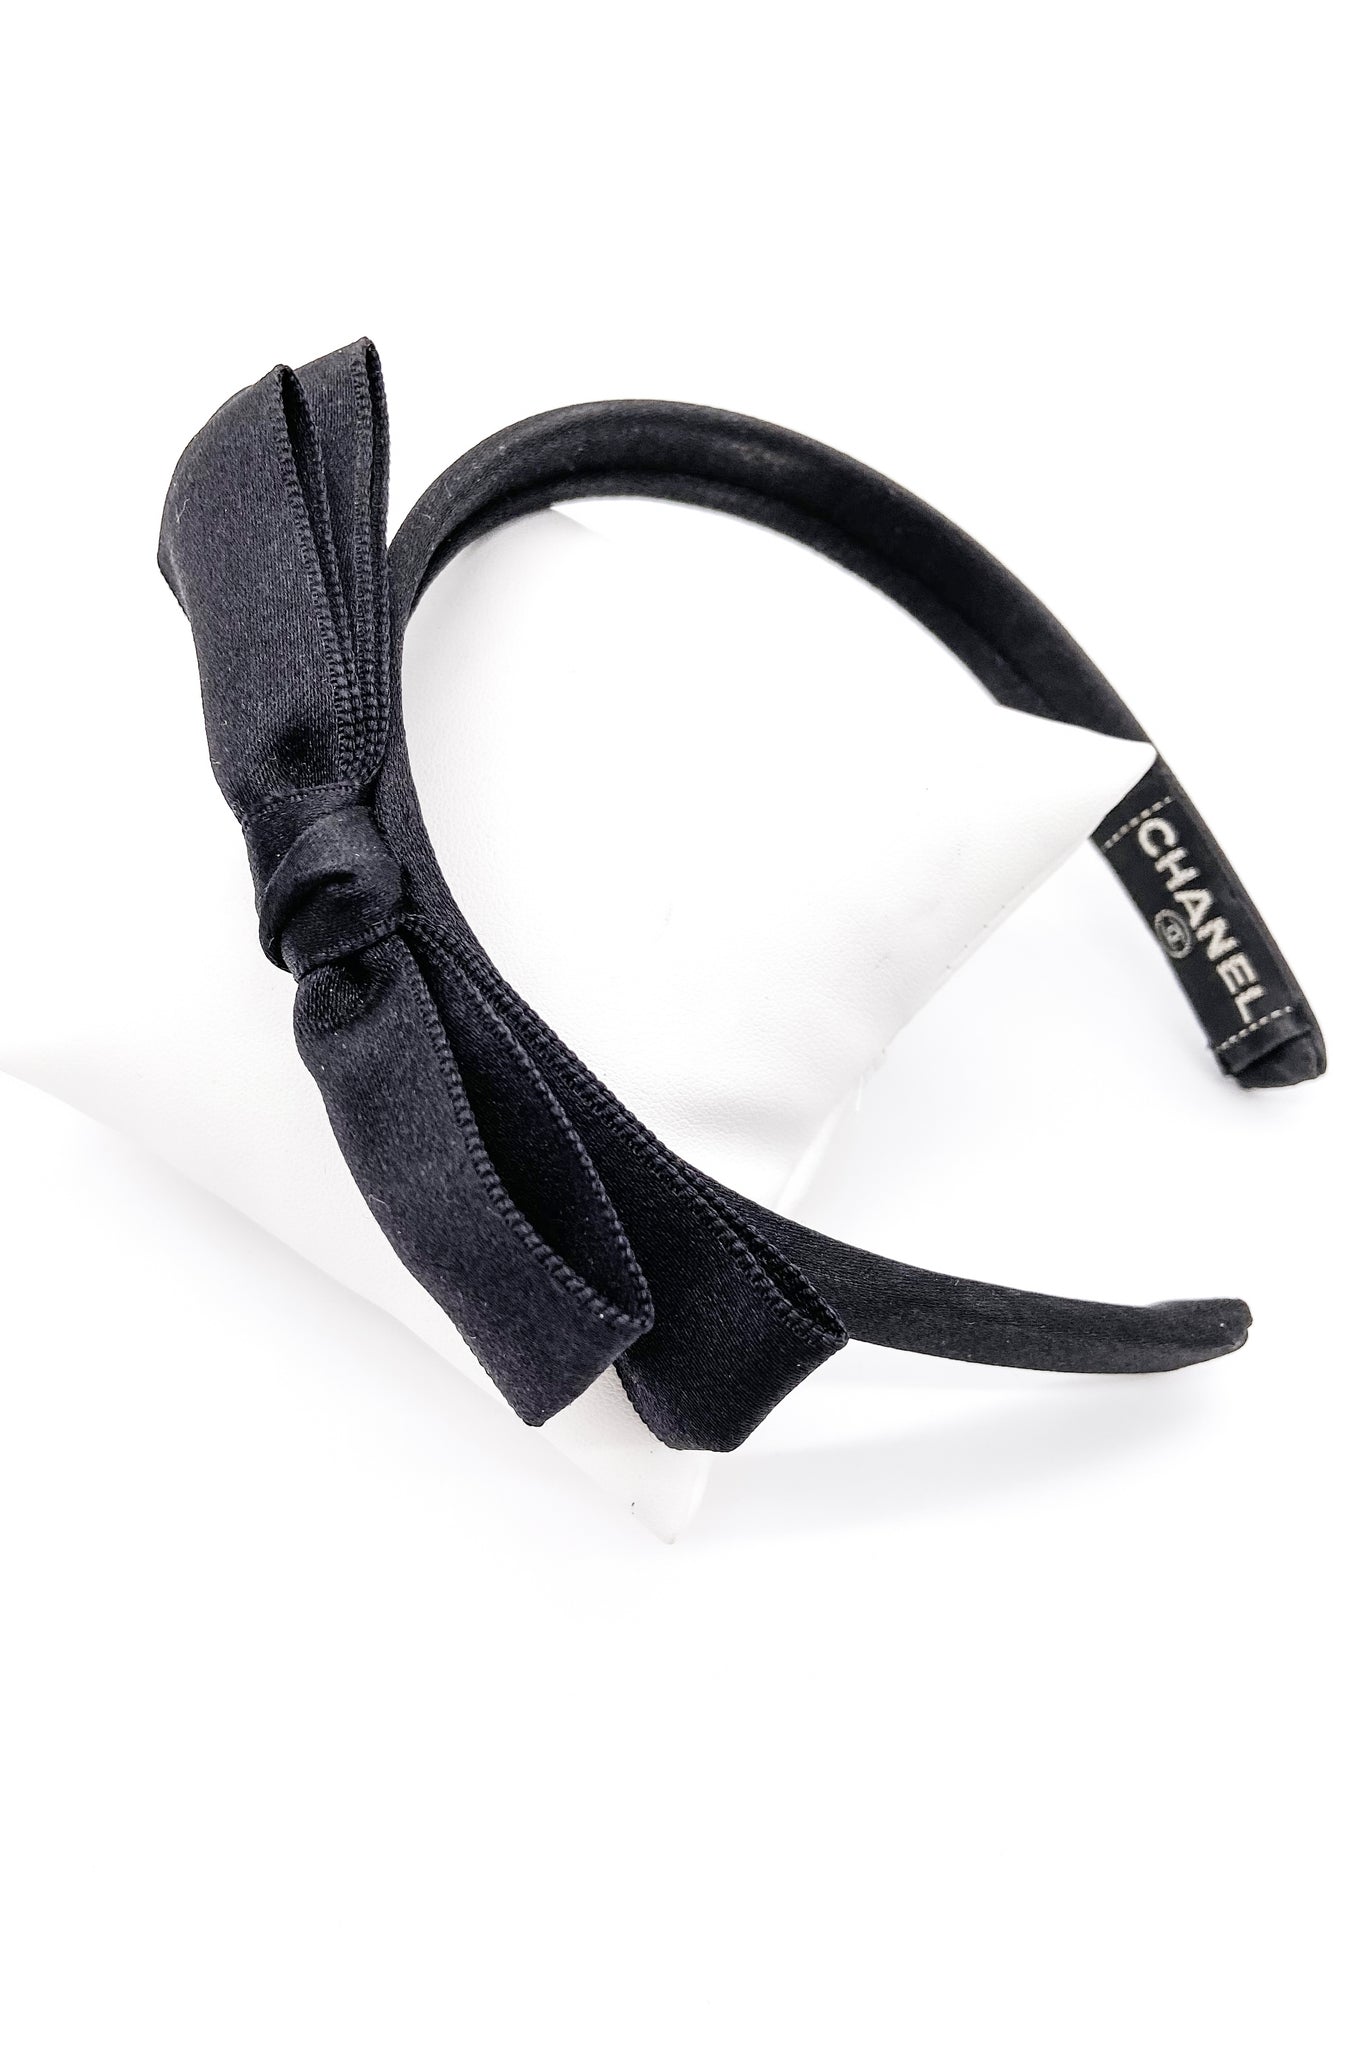 chanel bow headband